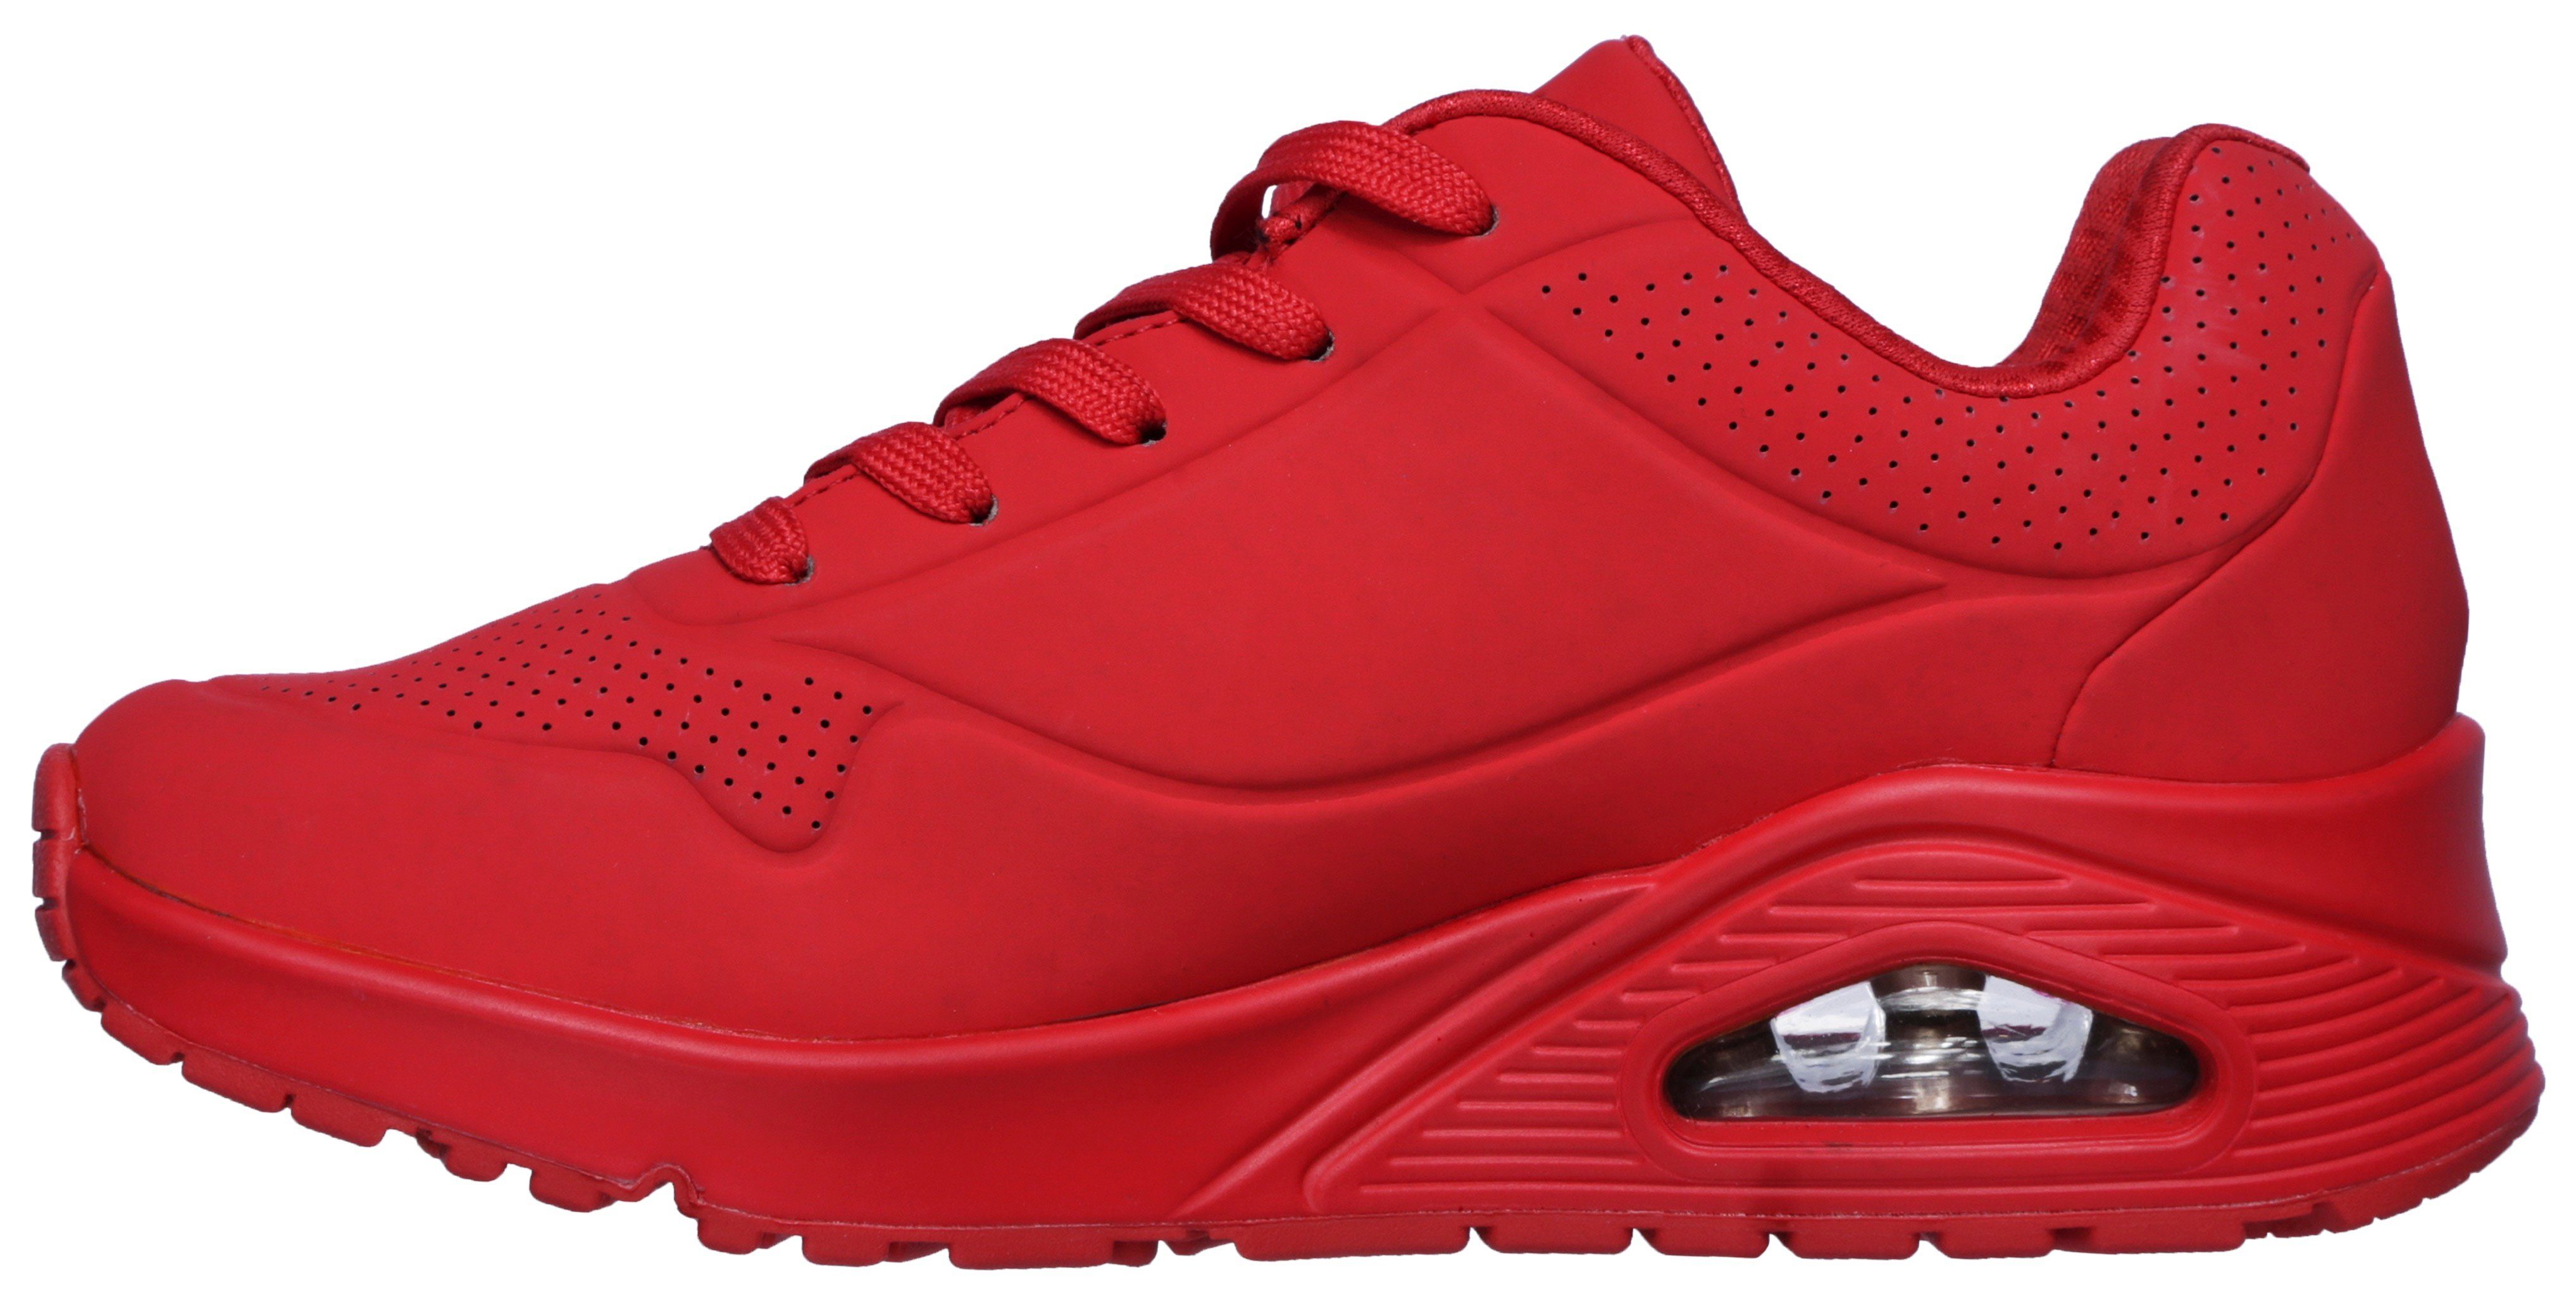 UNO weich AIR Innensohle Wedgesneaker rot STAND Skechers mit ON gepolsterte